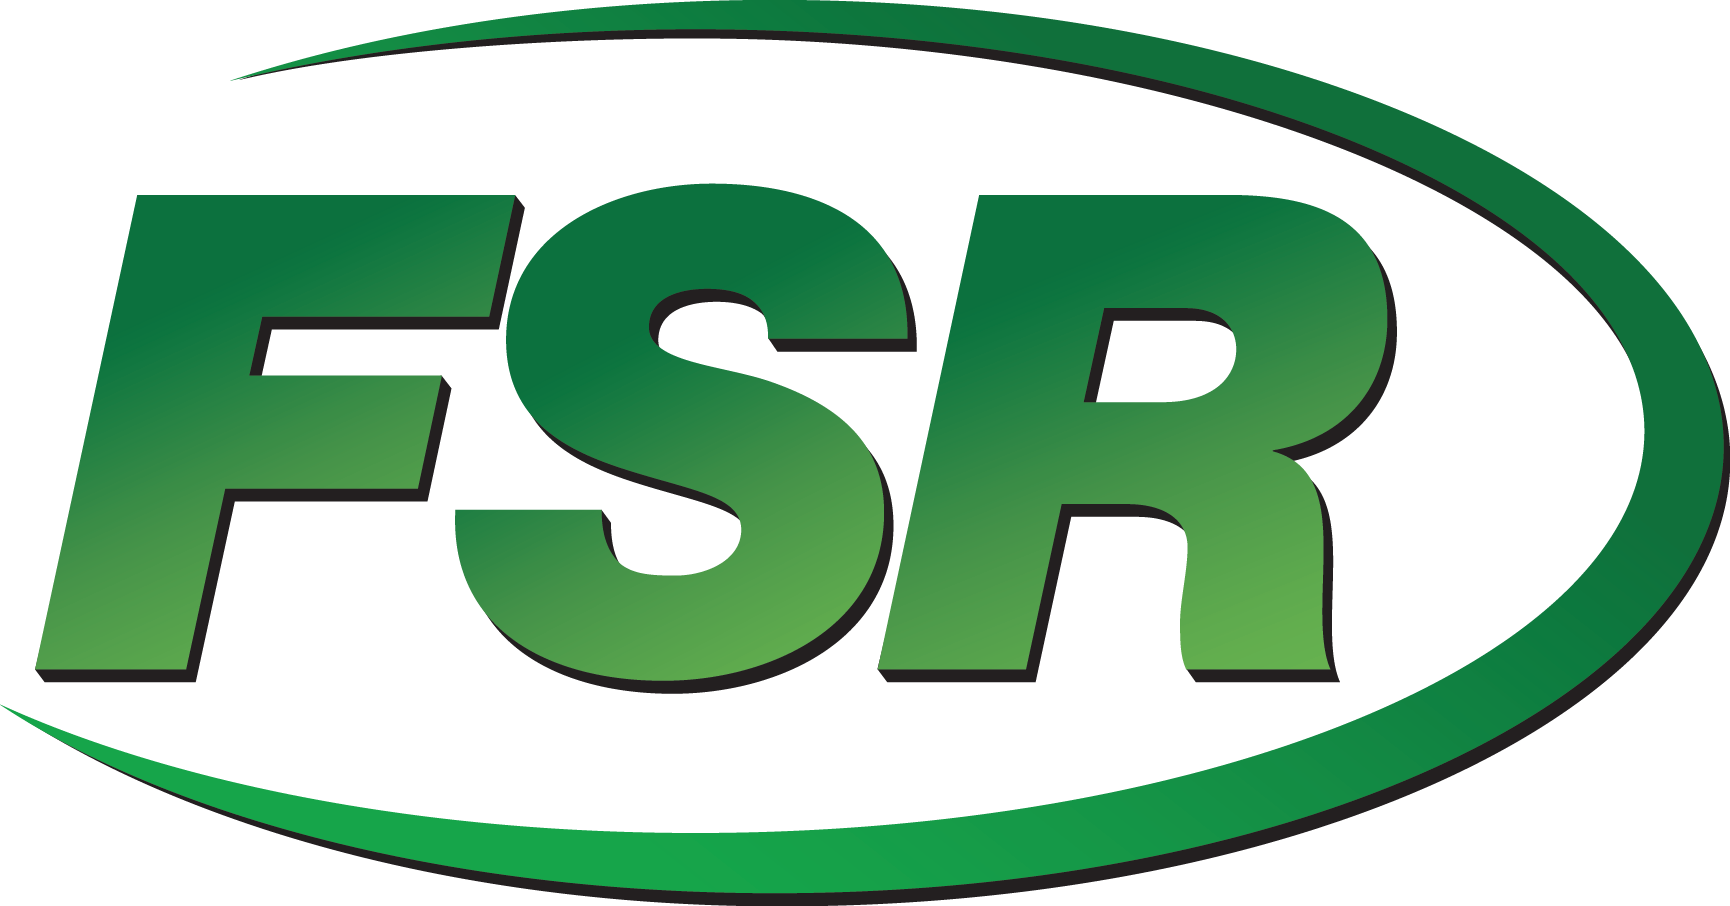 New FSR logo 5 12 CMYK